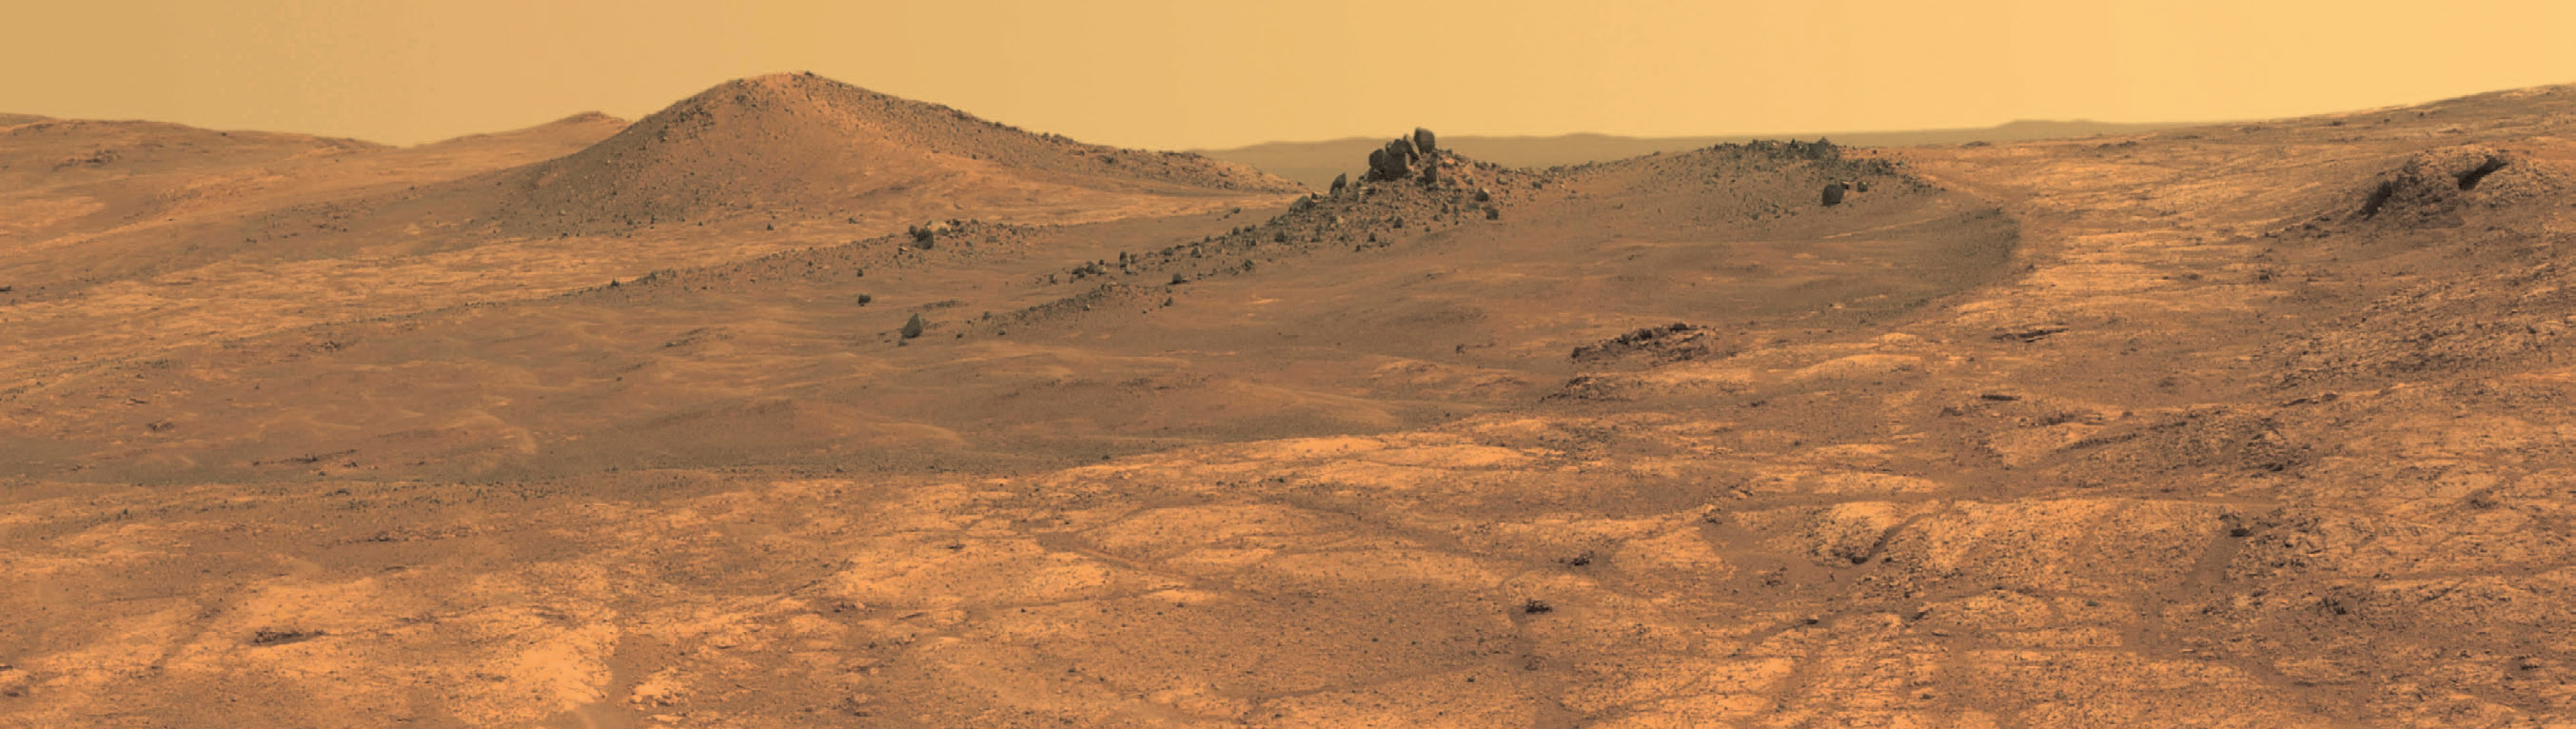 Снимки НАСА С поверхности Марса